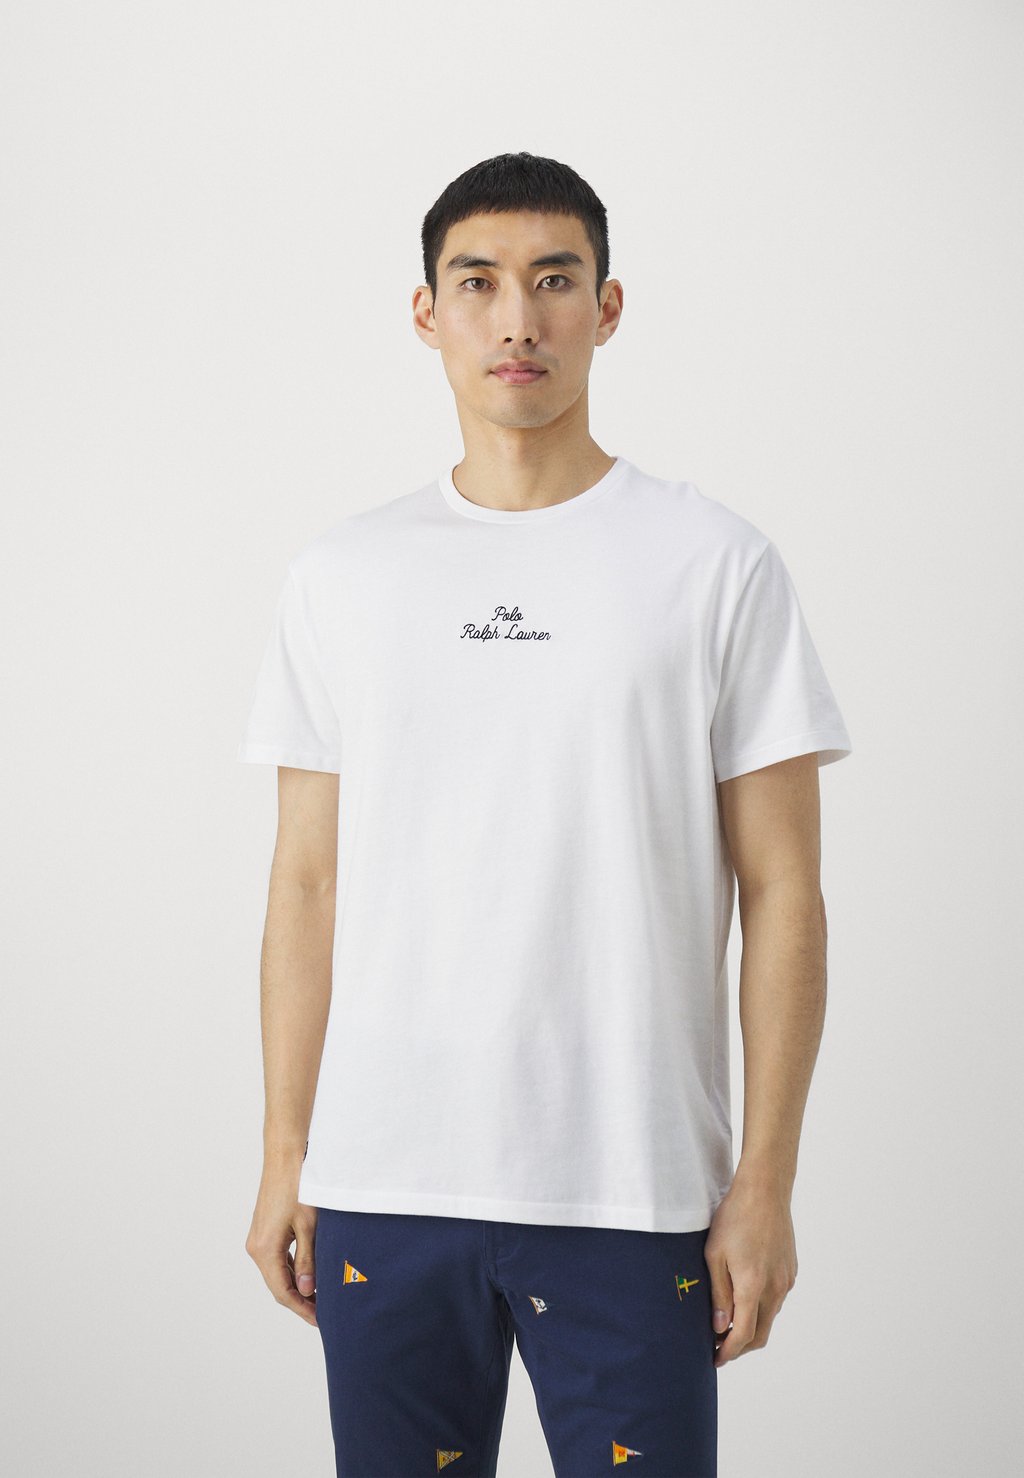 Базовая футболка Short Sleeve Polo Ralph Lauren, белый базовая футболка short sleeve polo ralph lauren цвет beach royal